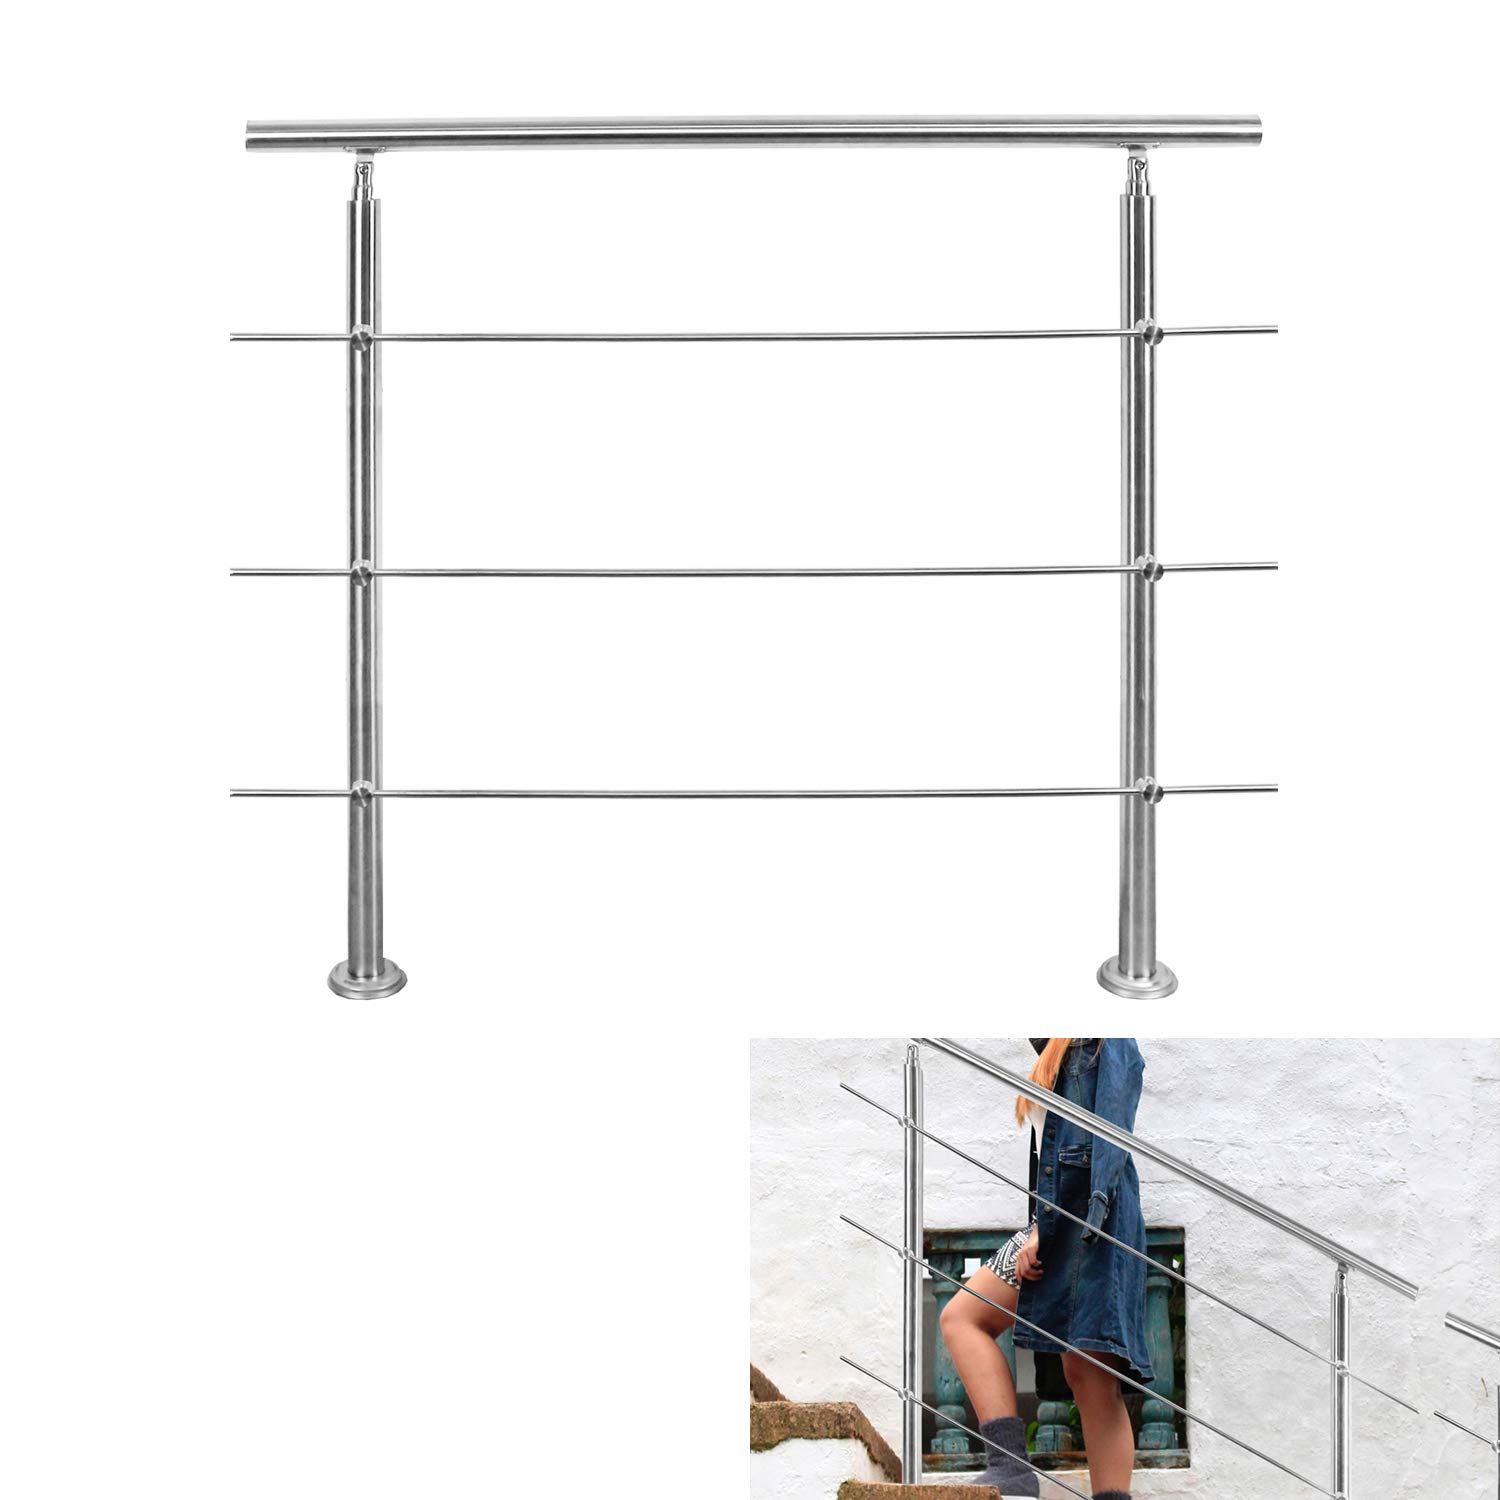 Riossad Edelstahl Handlauf Geländer für Balkon Brüstung Treppen mit/ohne Querstreben (80cm, 3 Querstreben)